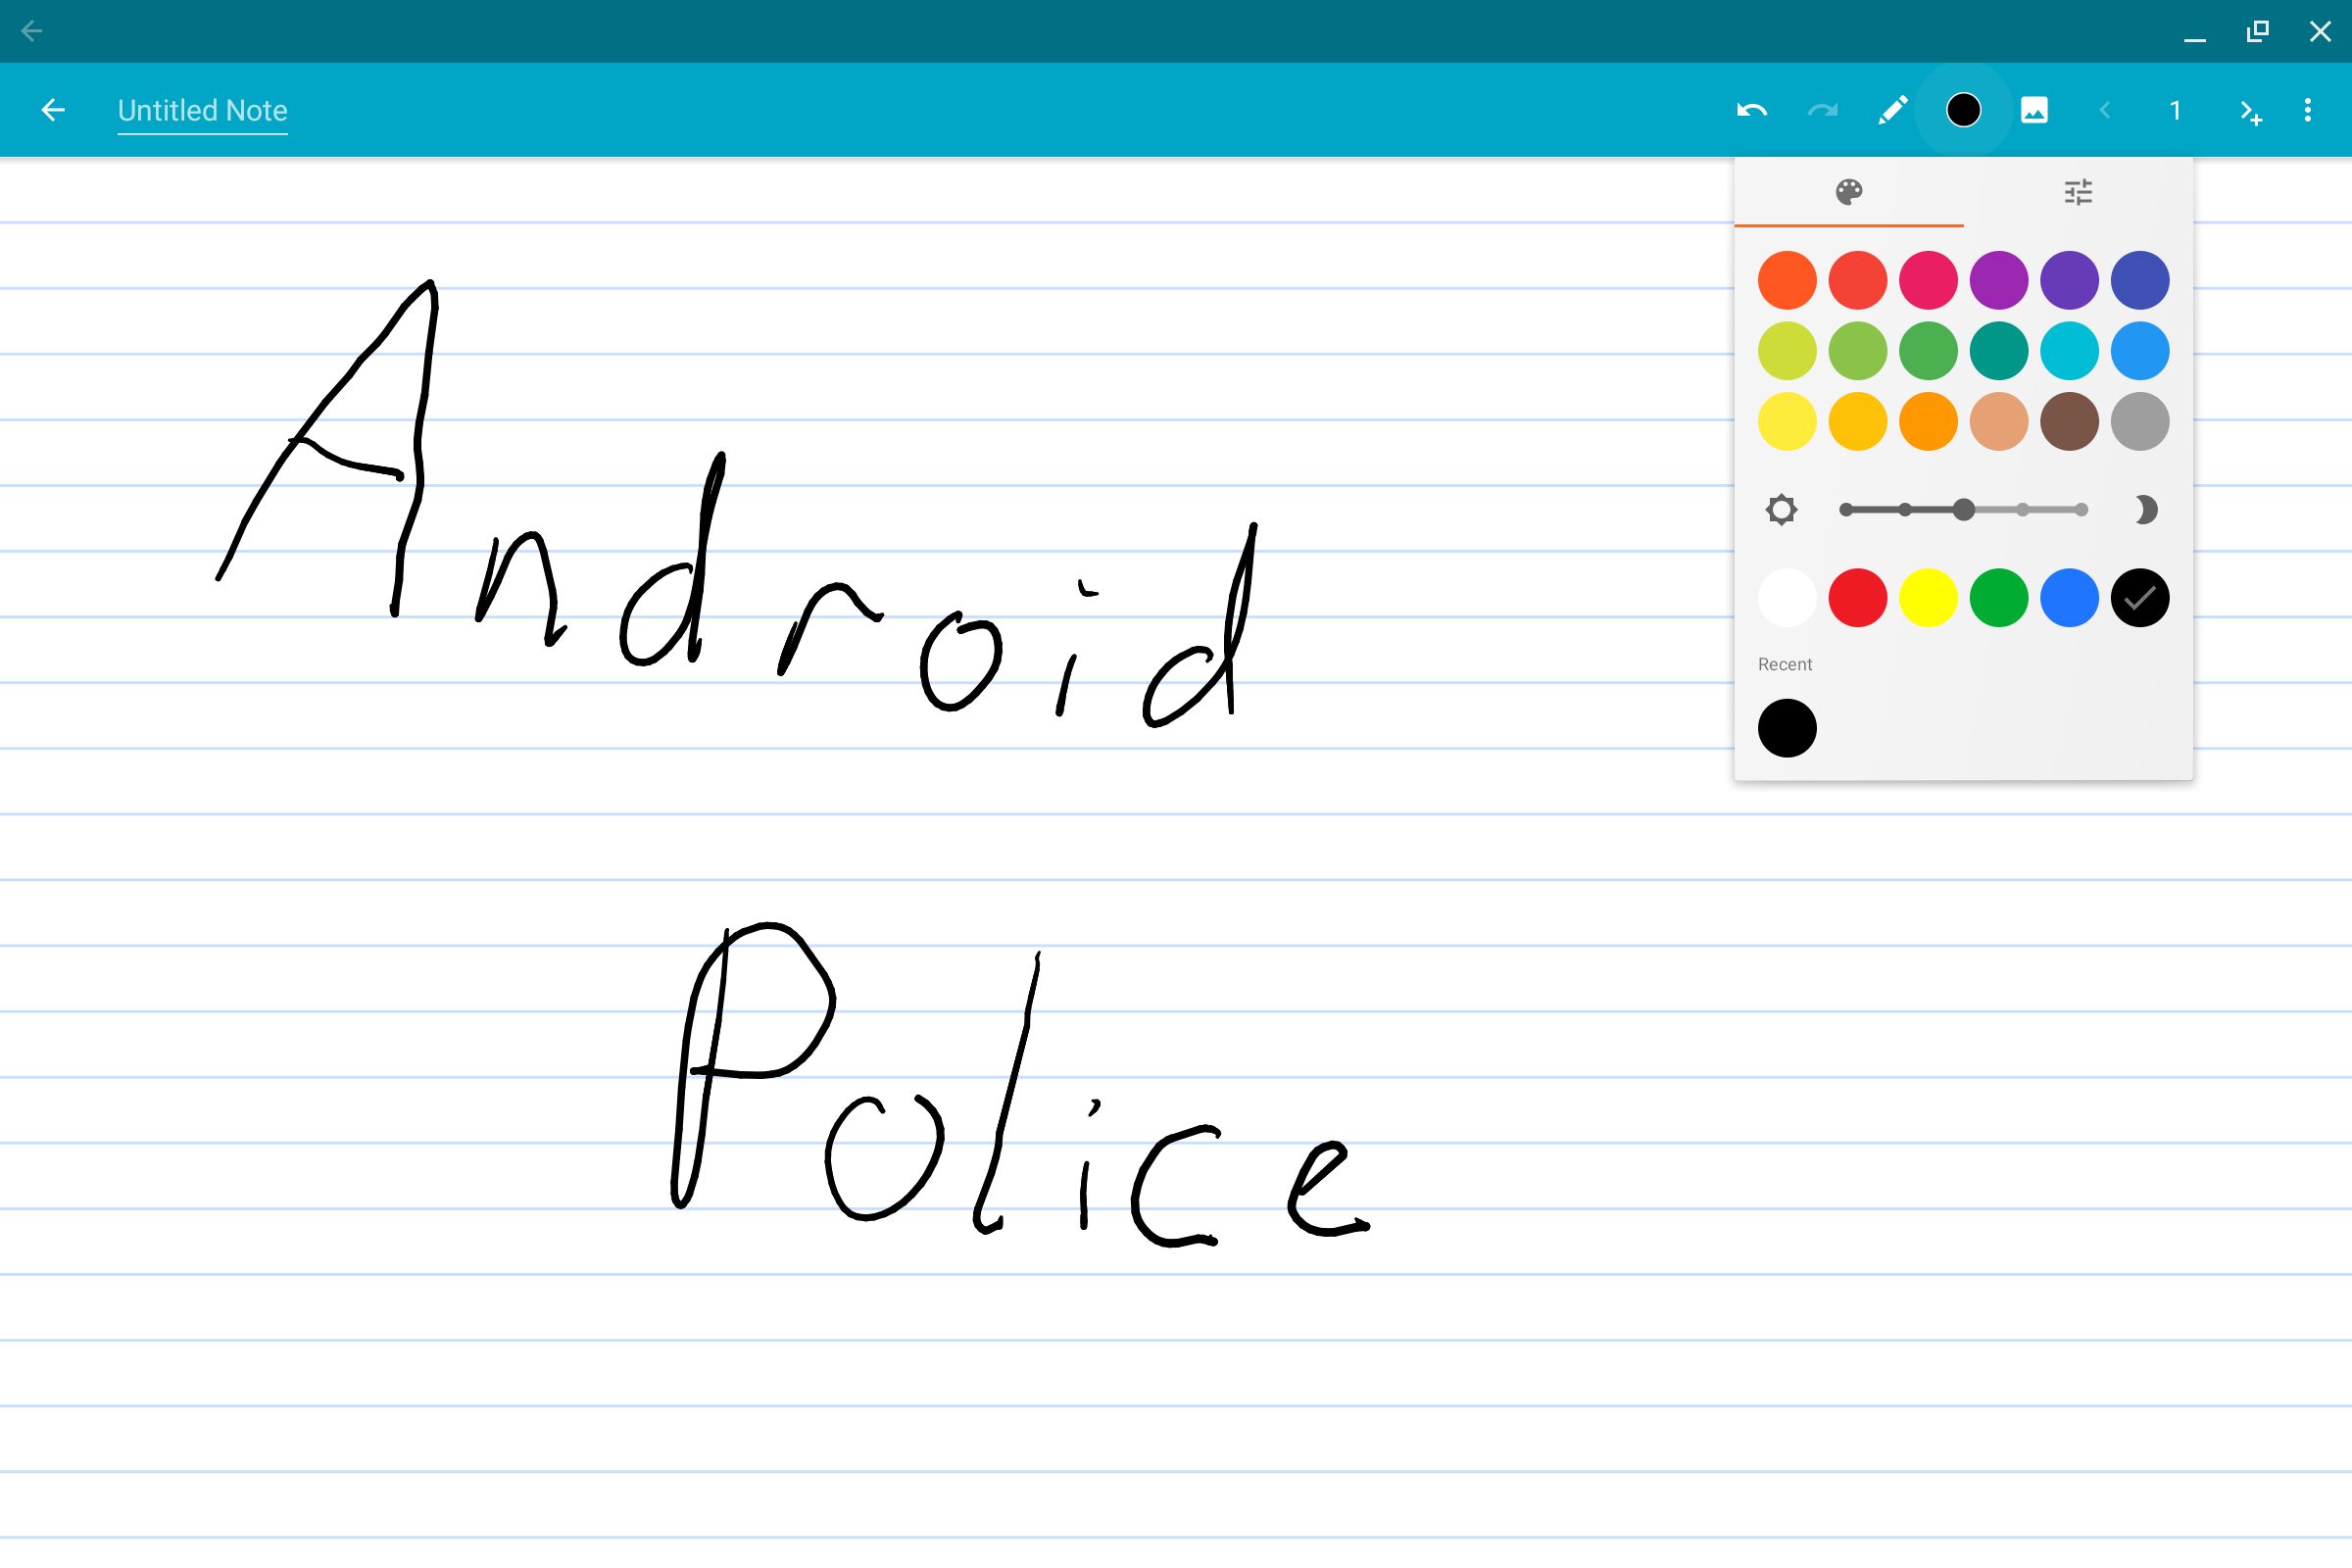 Uma nota no aplicativo Android Squid com Android Police escrito nele